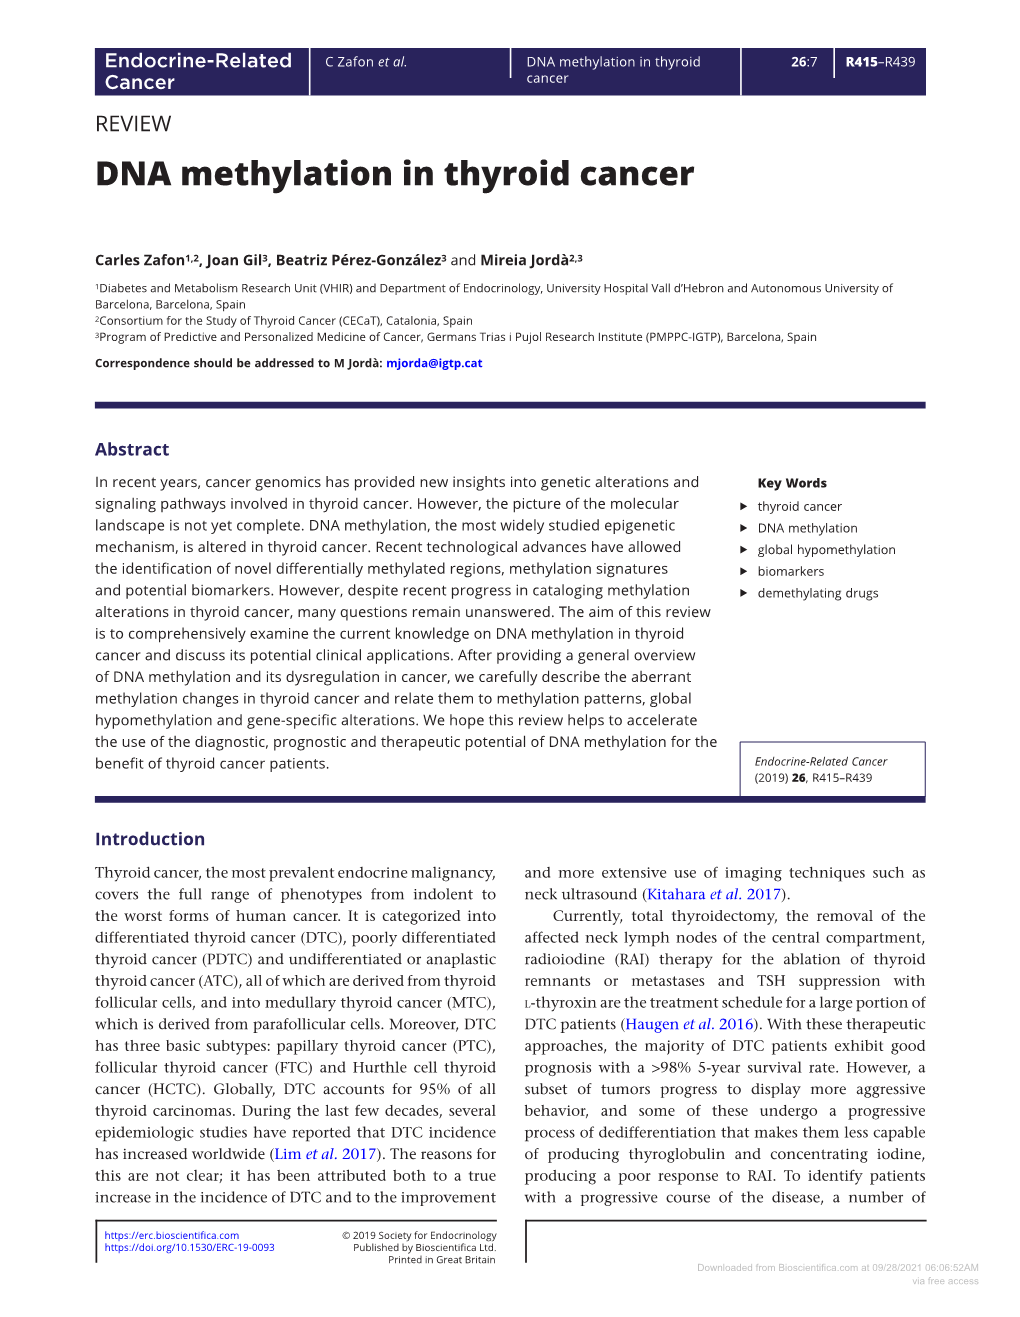 DNA Methylation in Thyroid Cancer